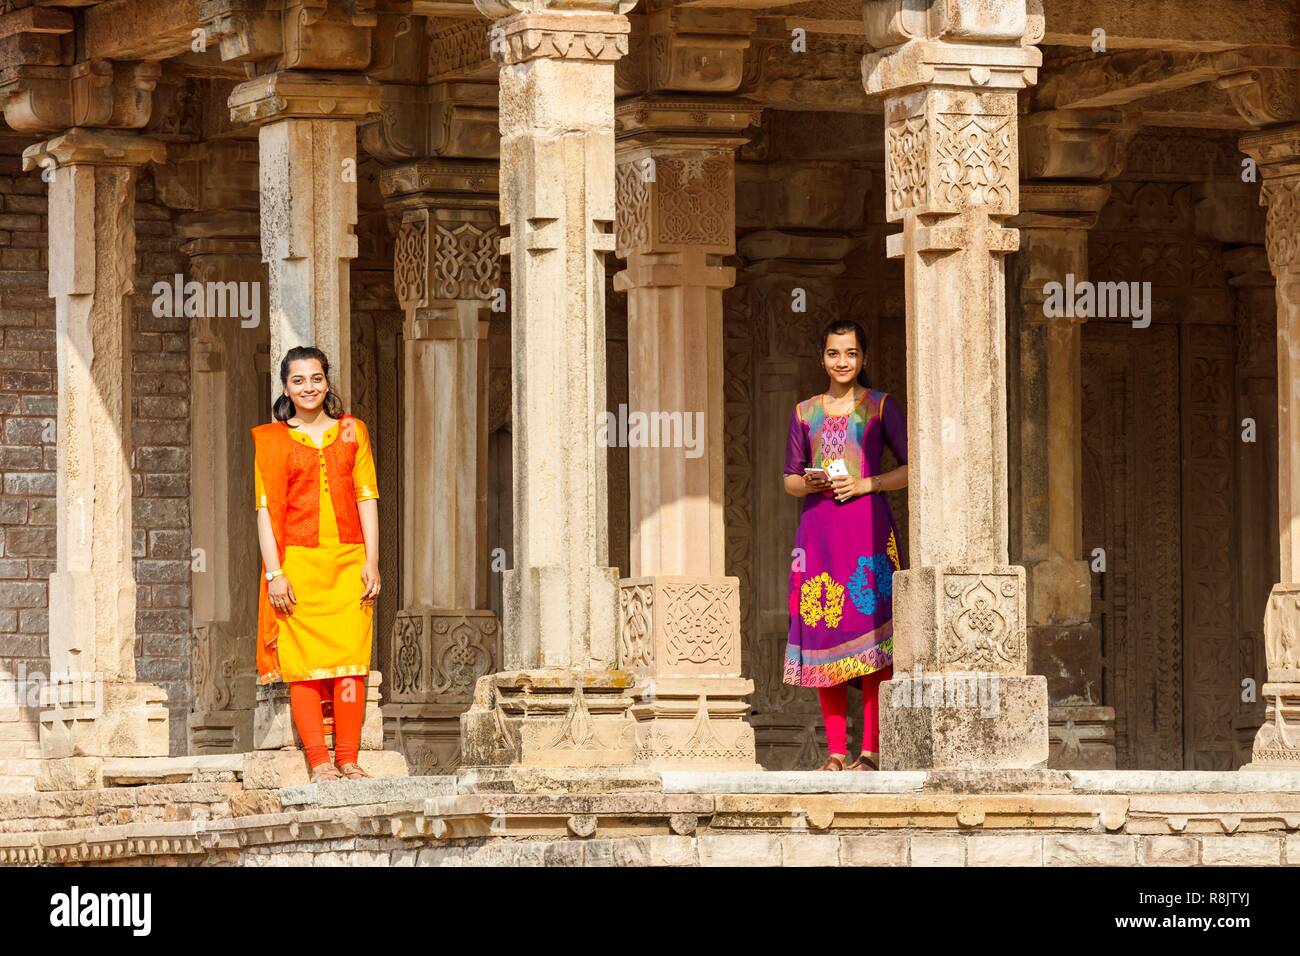 India, Madhya Pradesh, Chanderi, two girls in the Khilji mosque Stock Photo